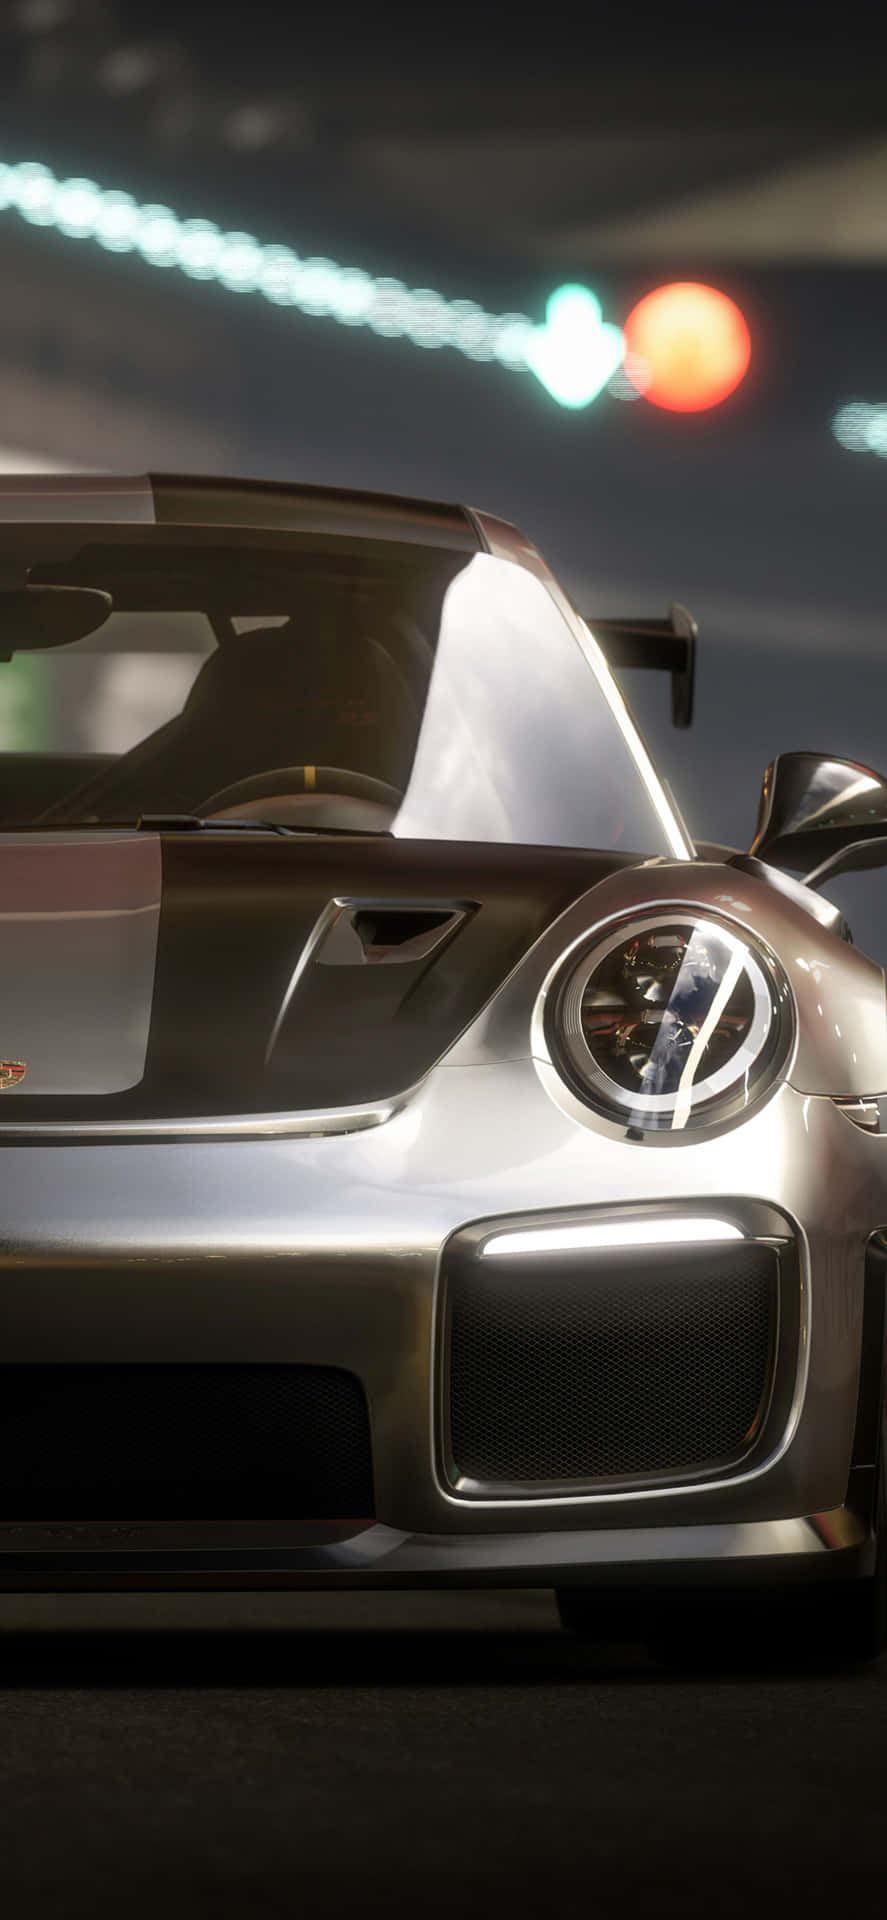 iPhone X Porcshe 911 Forza Motorsport 7 Background